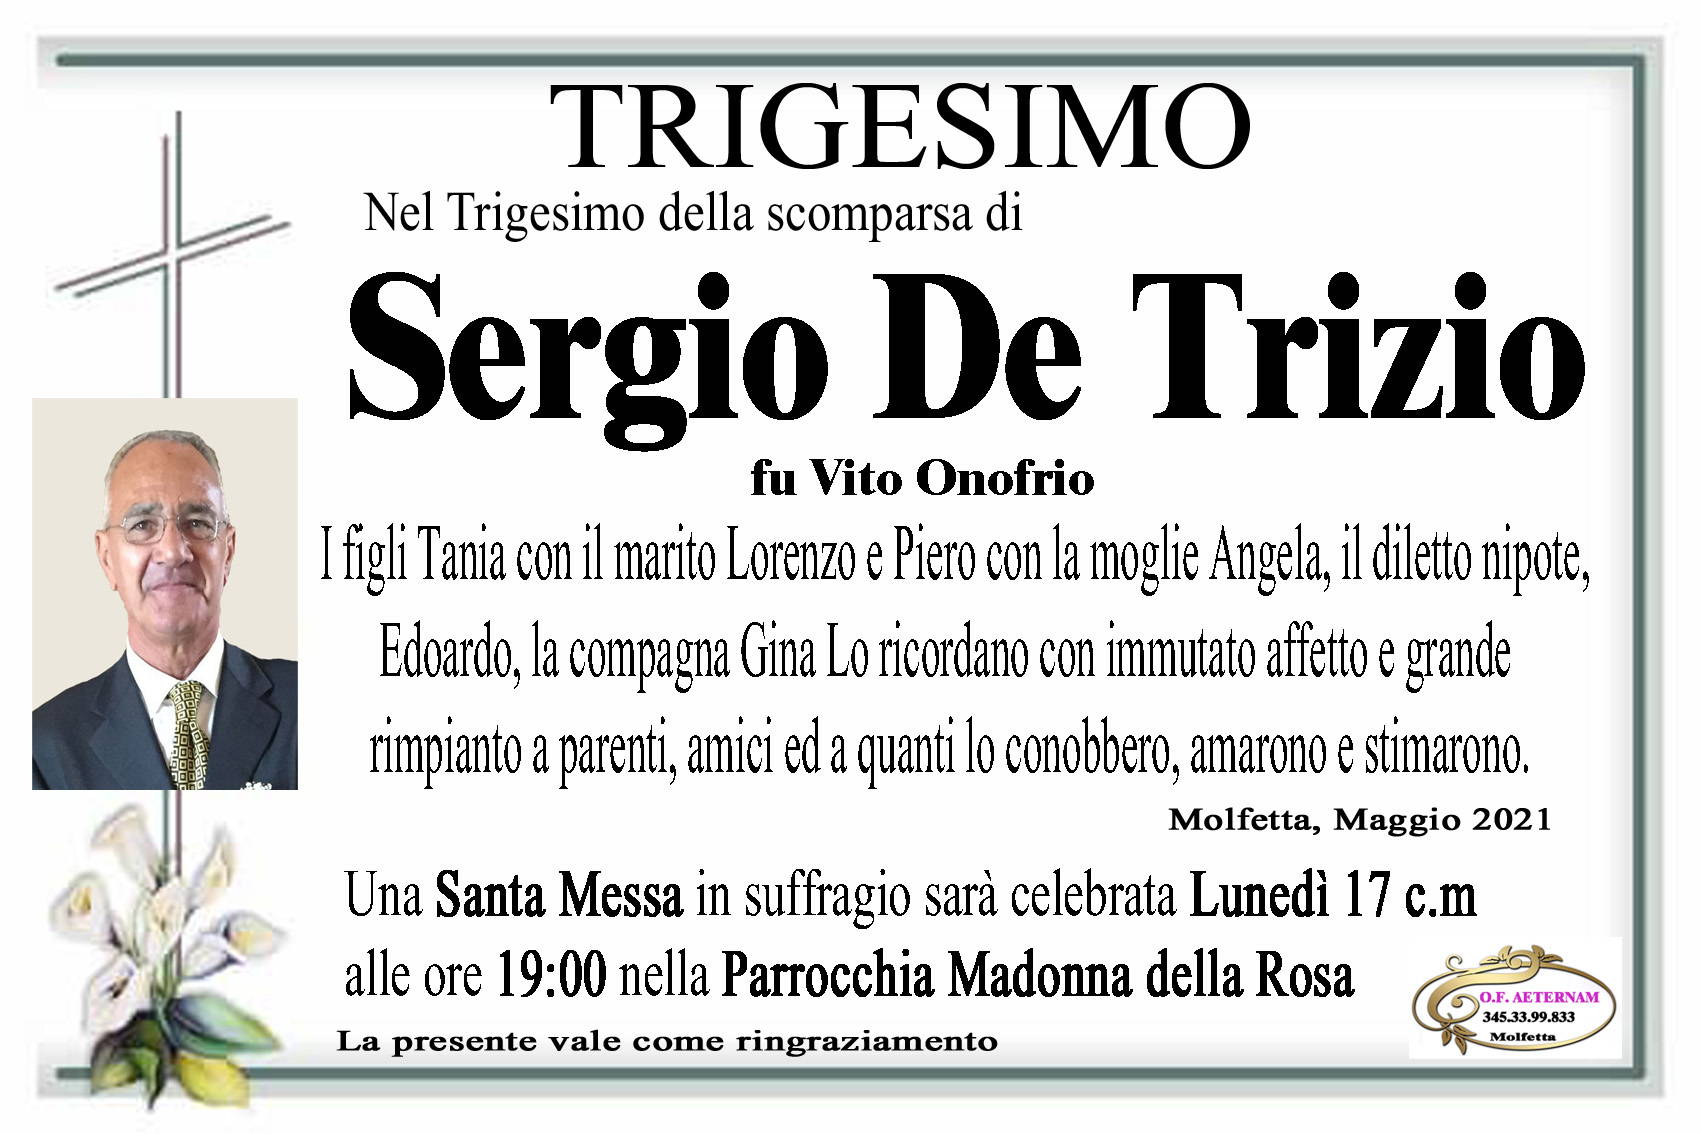 Sergio De Trizio